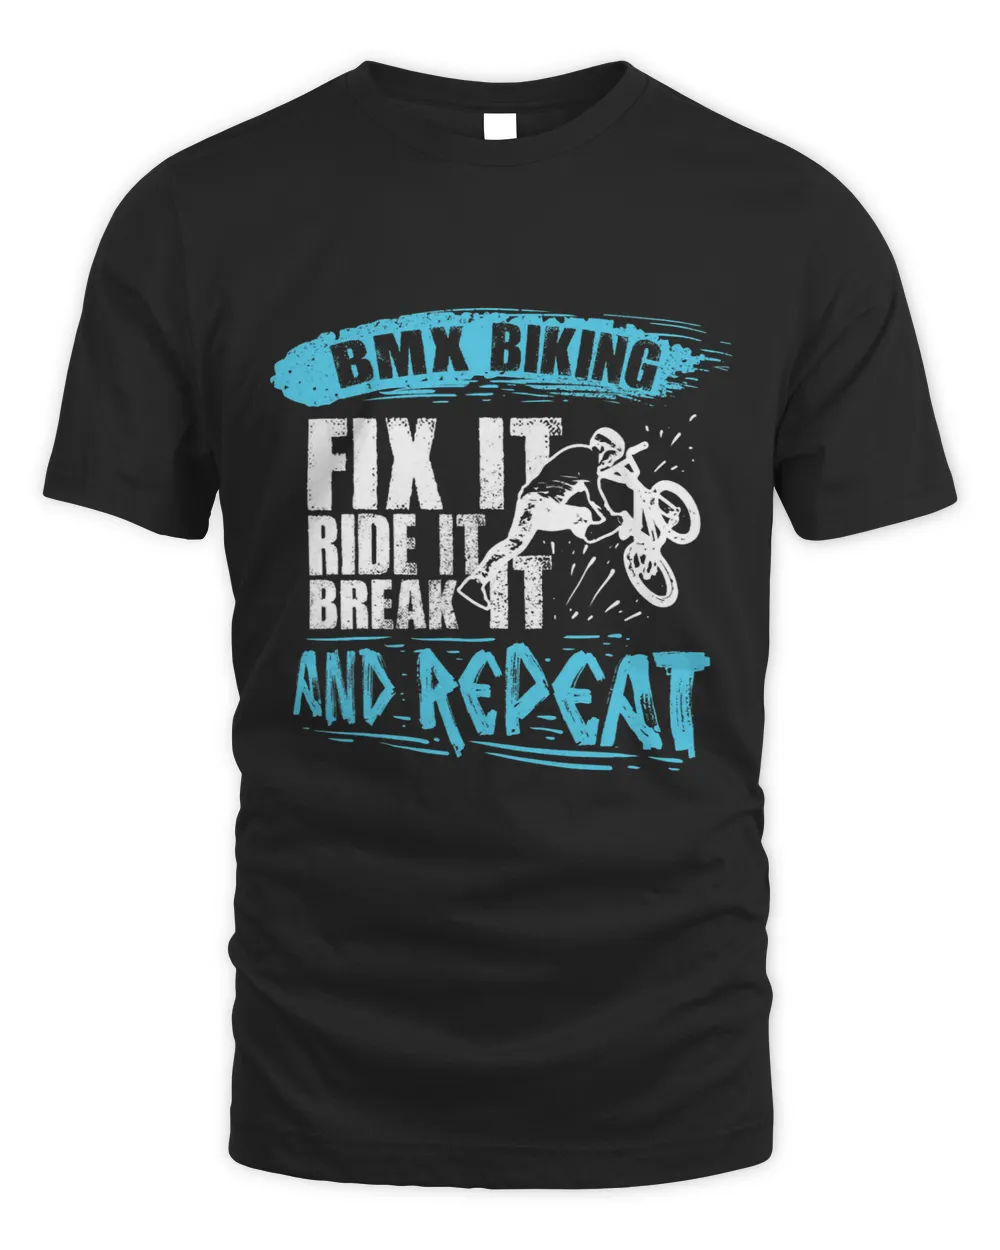 Mens BMX Biking Fit It Ride It And Repeat Funny BMX Rider